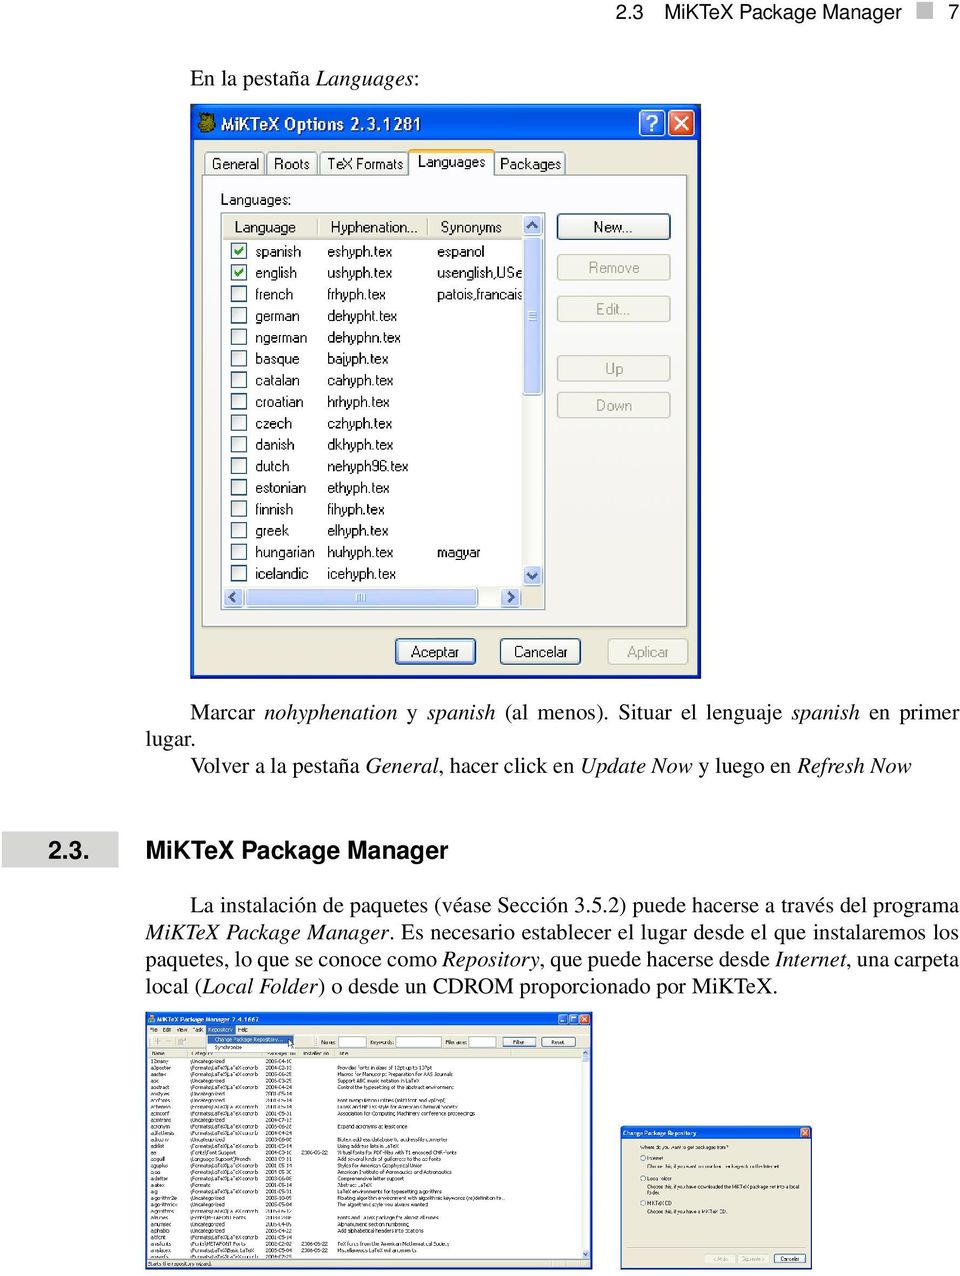 MiKTeX Package Manager La instalación de paquetes (véase Sección 3.5.2) puede hacerse a través del programa MiKTeX Package Manager.